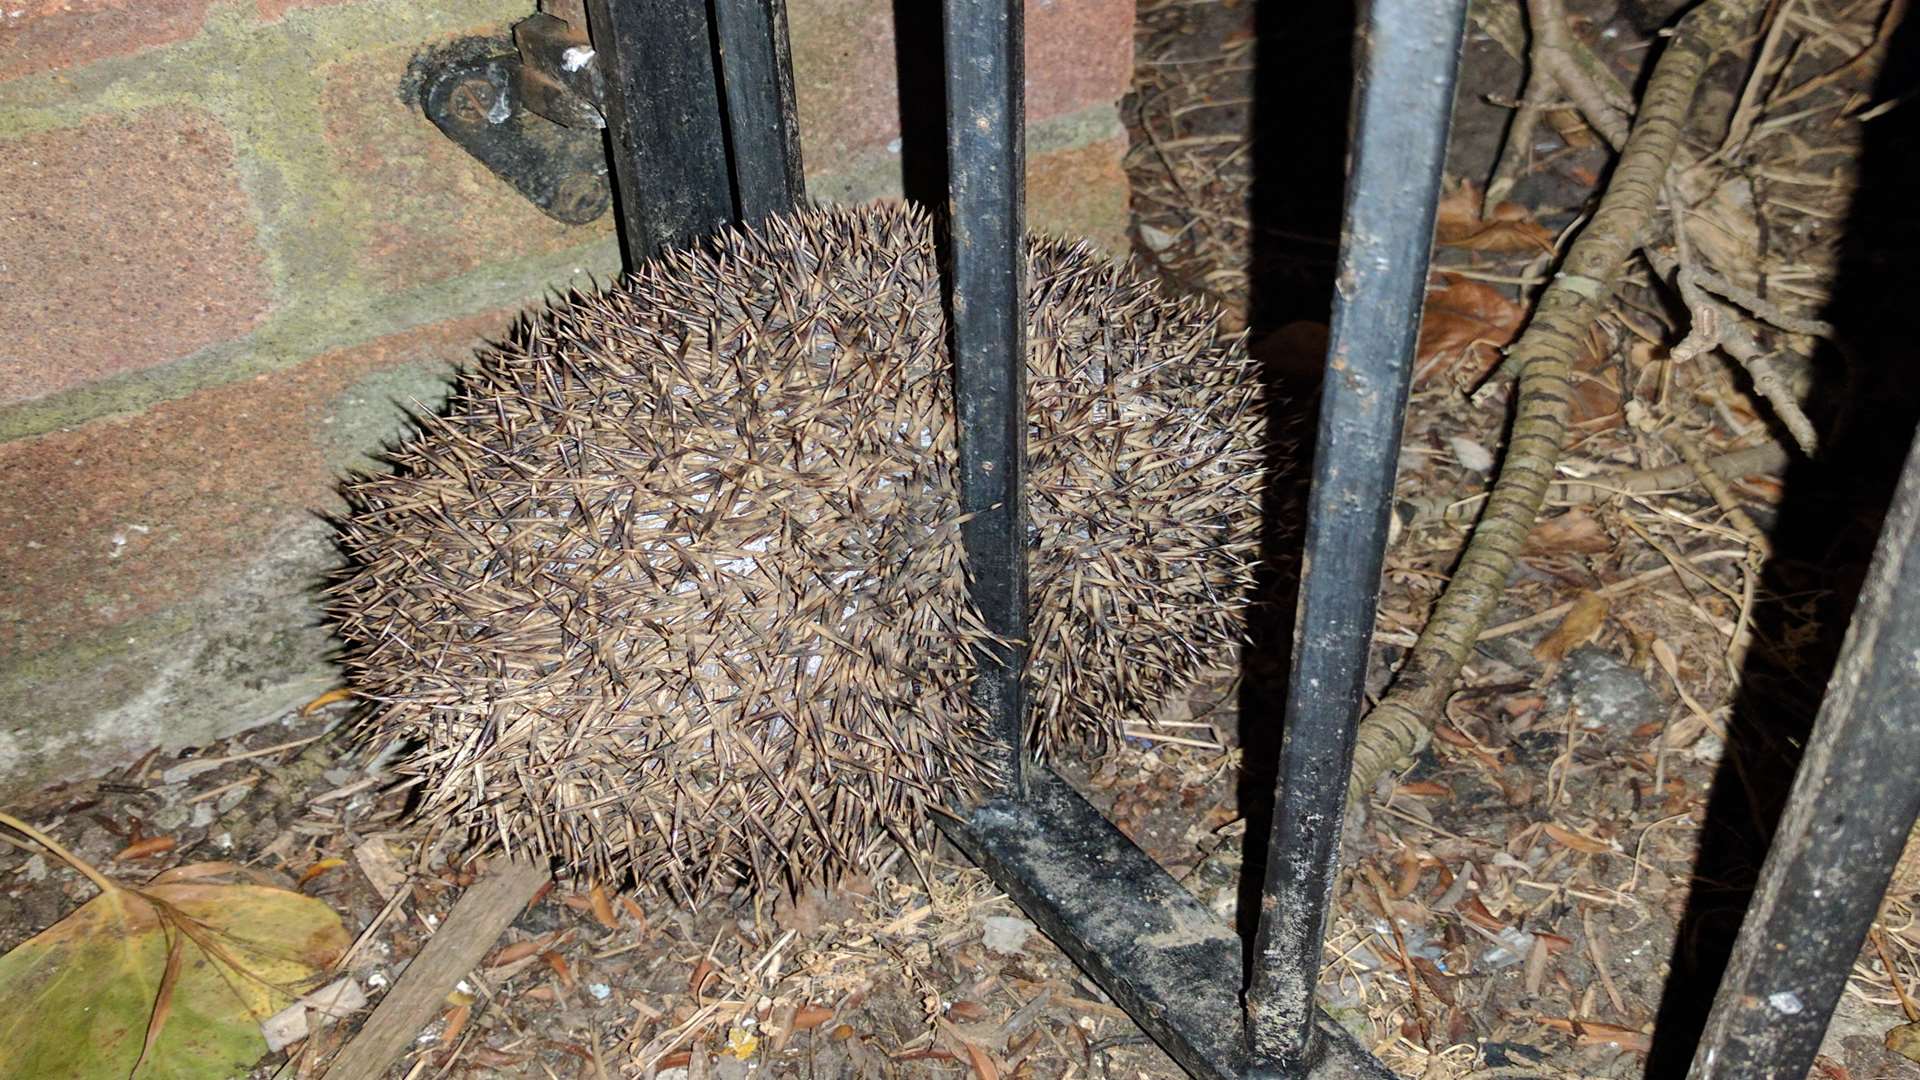 The hedgehog was stuck fast between gate railings